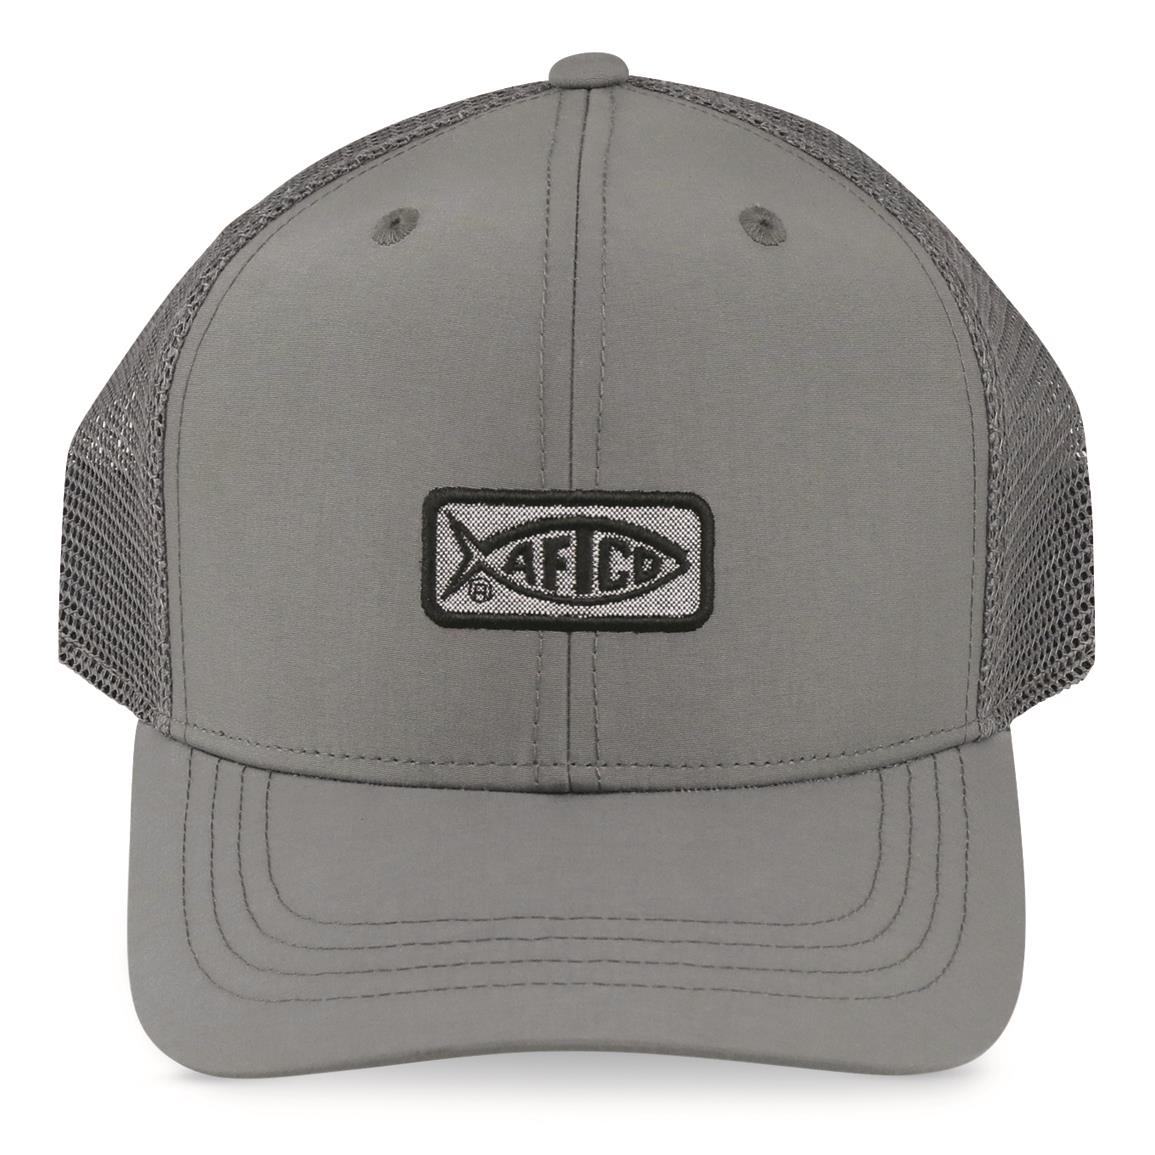 AFTCO Original Fishing Trucker Cap, Charcoal